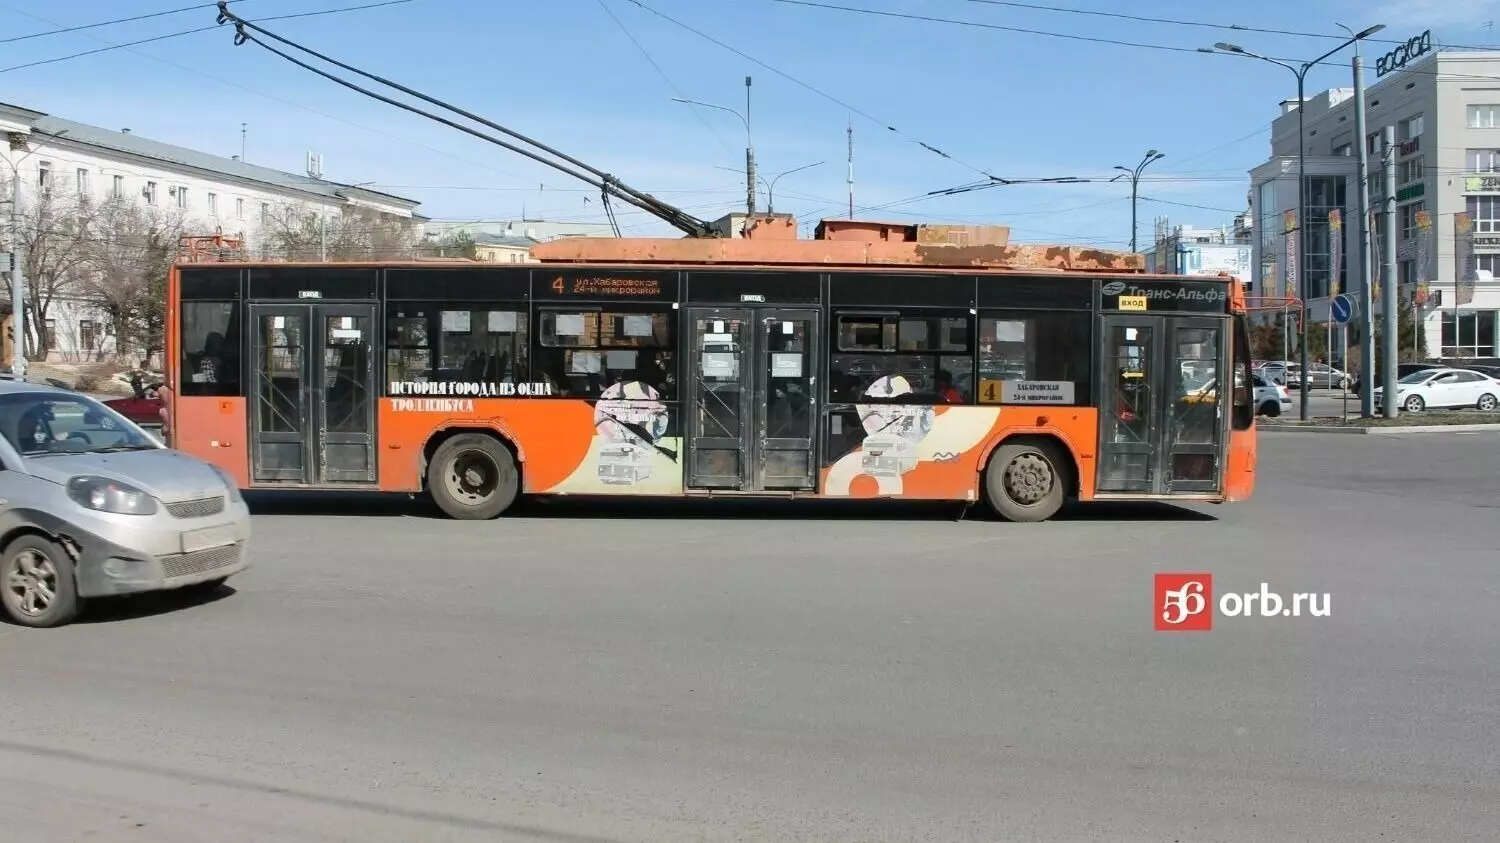 Коротким маршрутом троллейбусы будут ездить временно